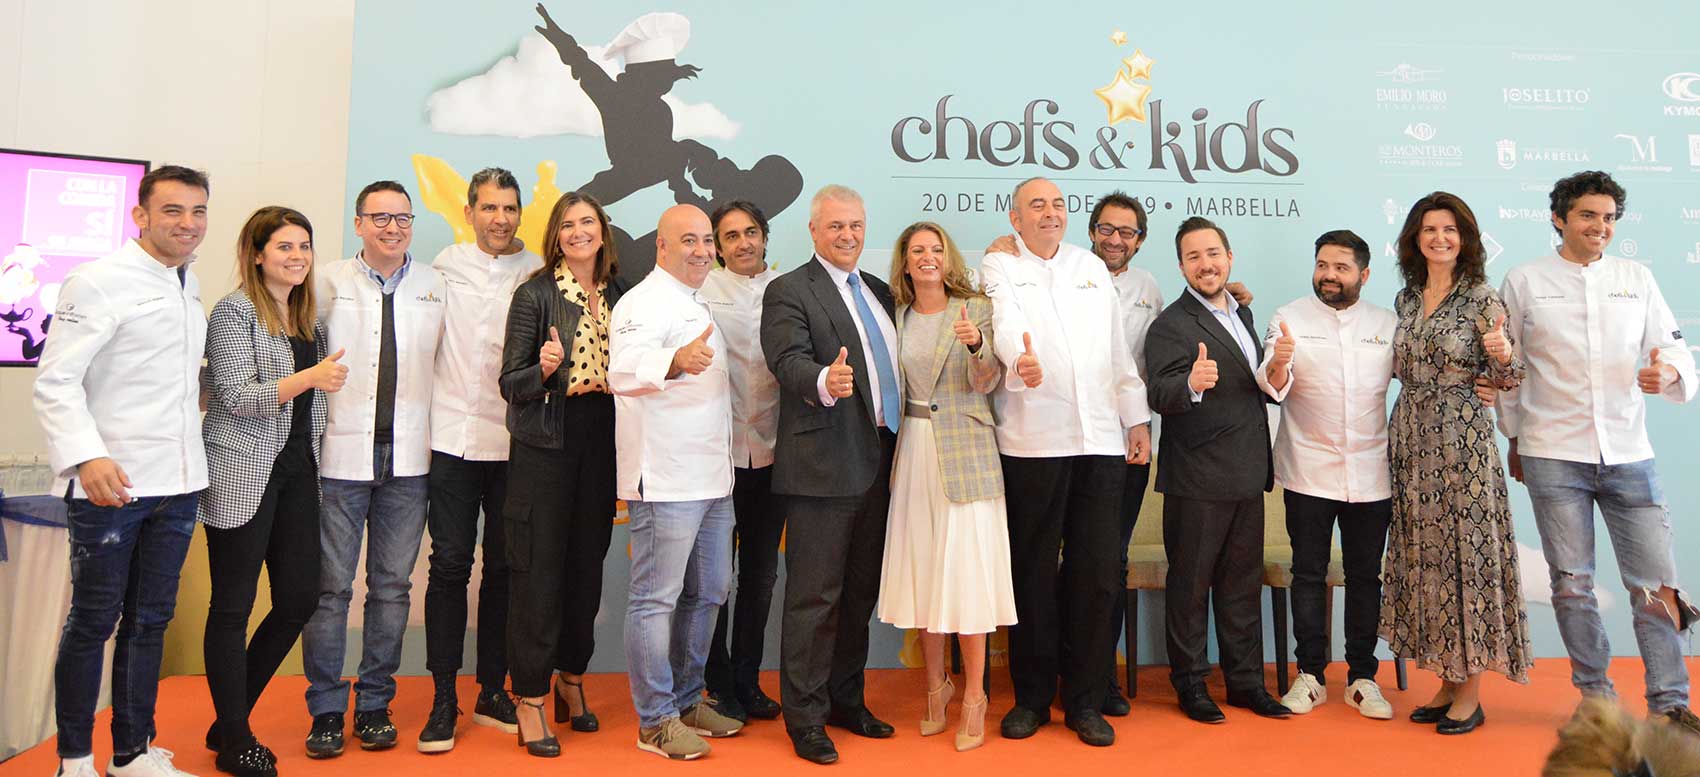 La segunda edición de Chefs&Kids se celebrará en el Hotel Los Monteros con 27 chefs con Estrellas Michelin